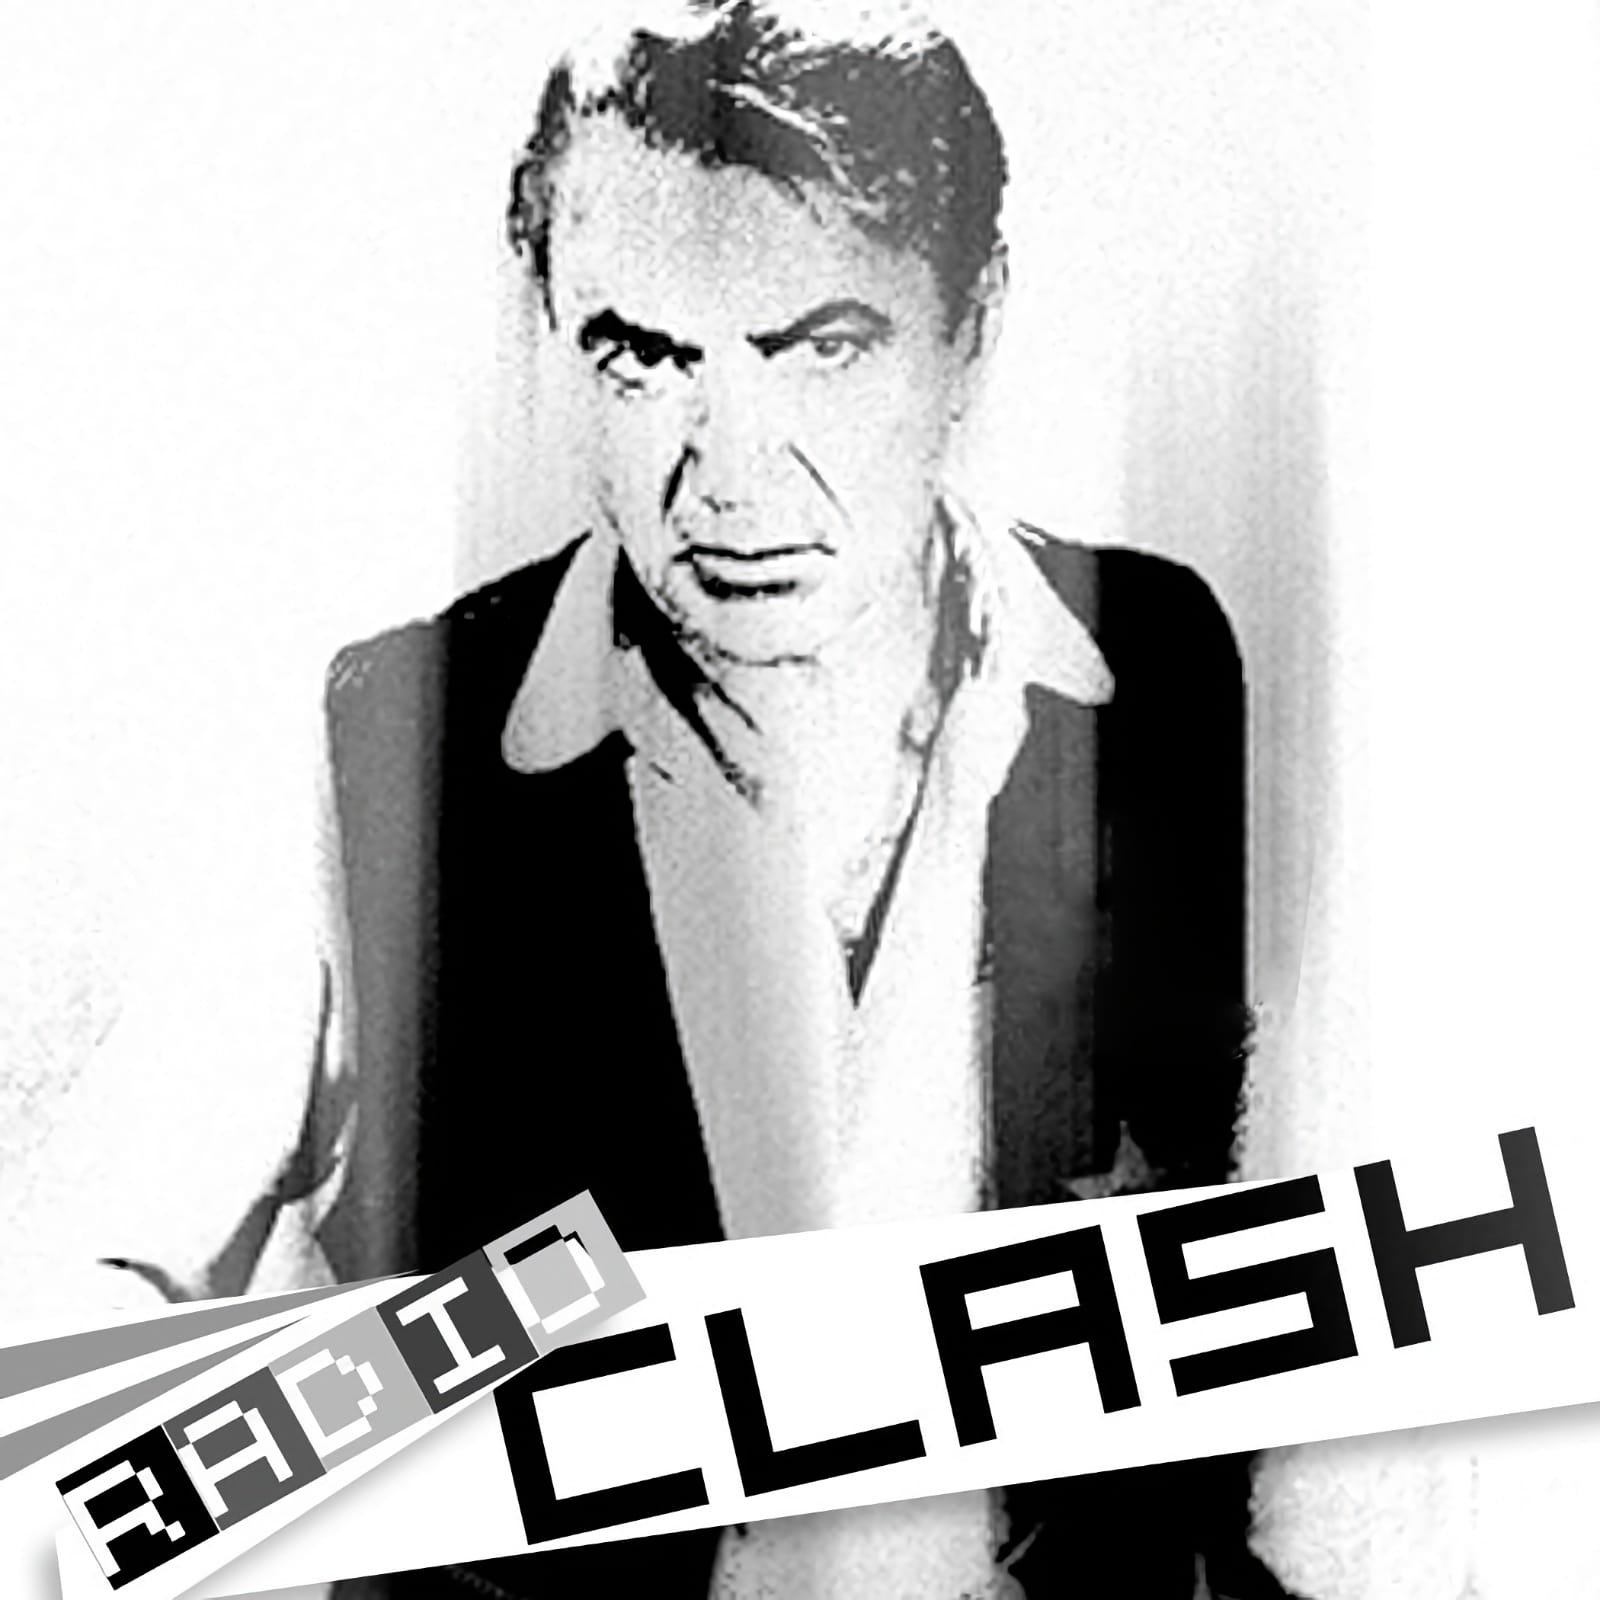 Radio Clash 1-201 – now on bittorrent